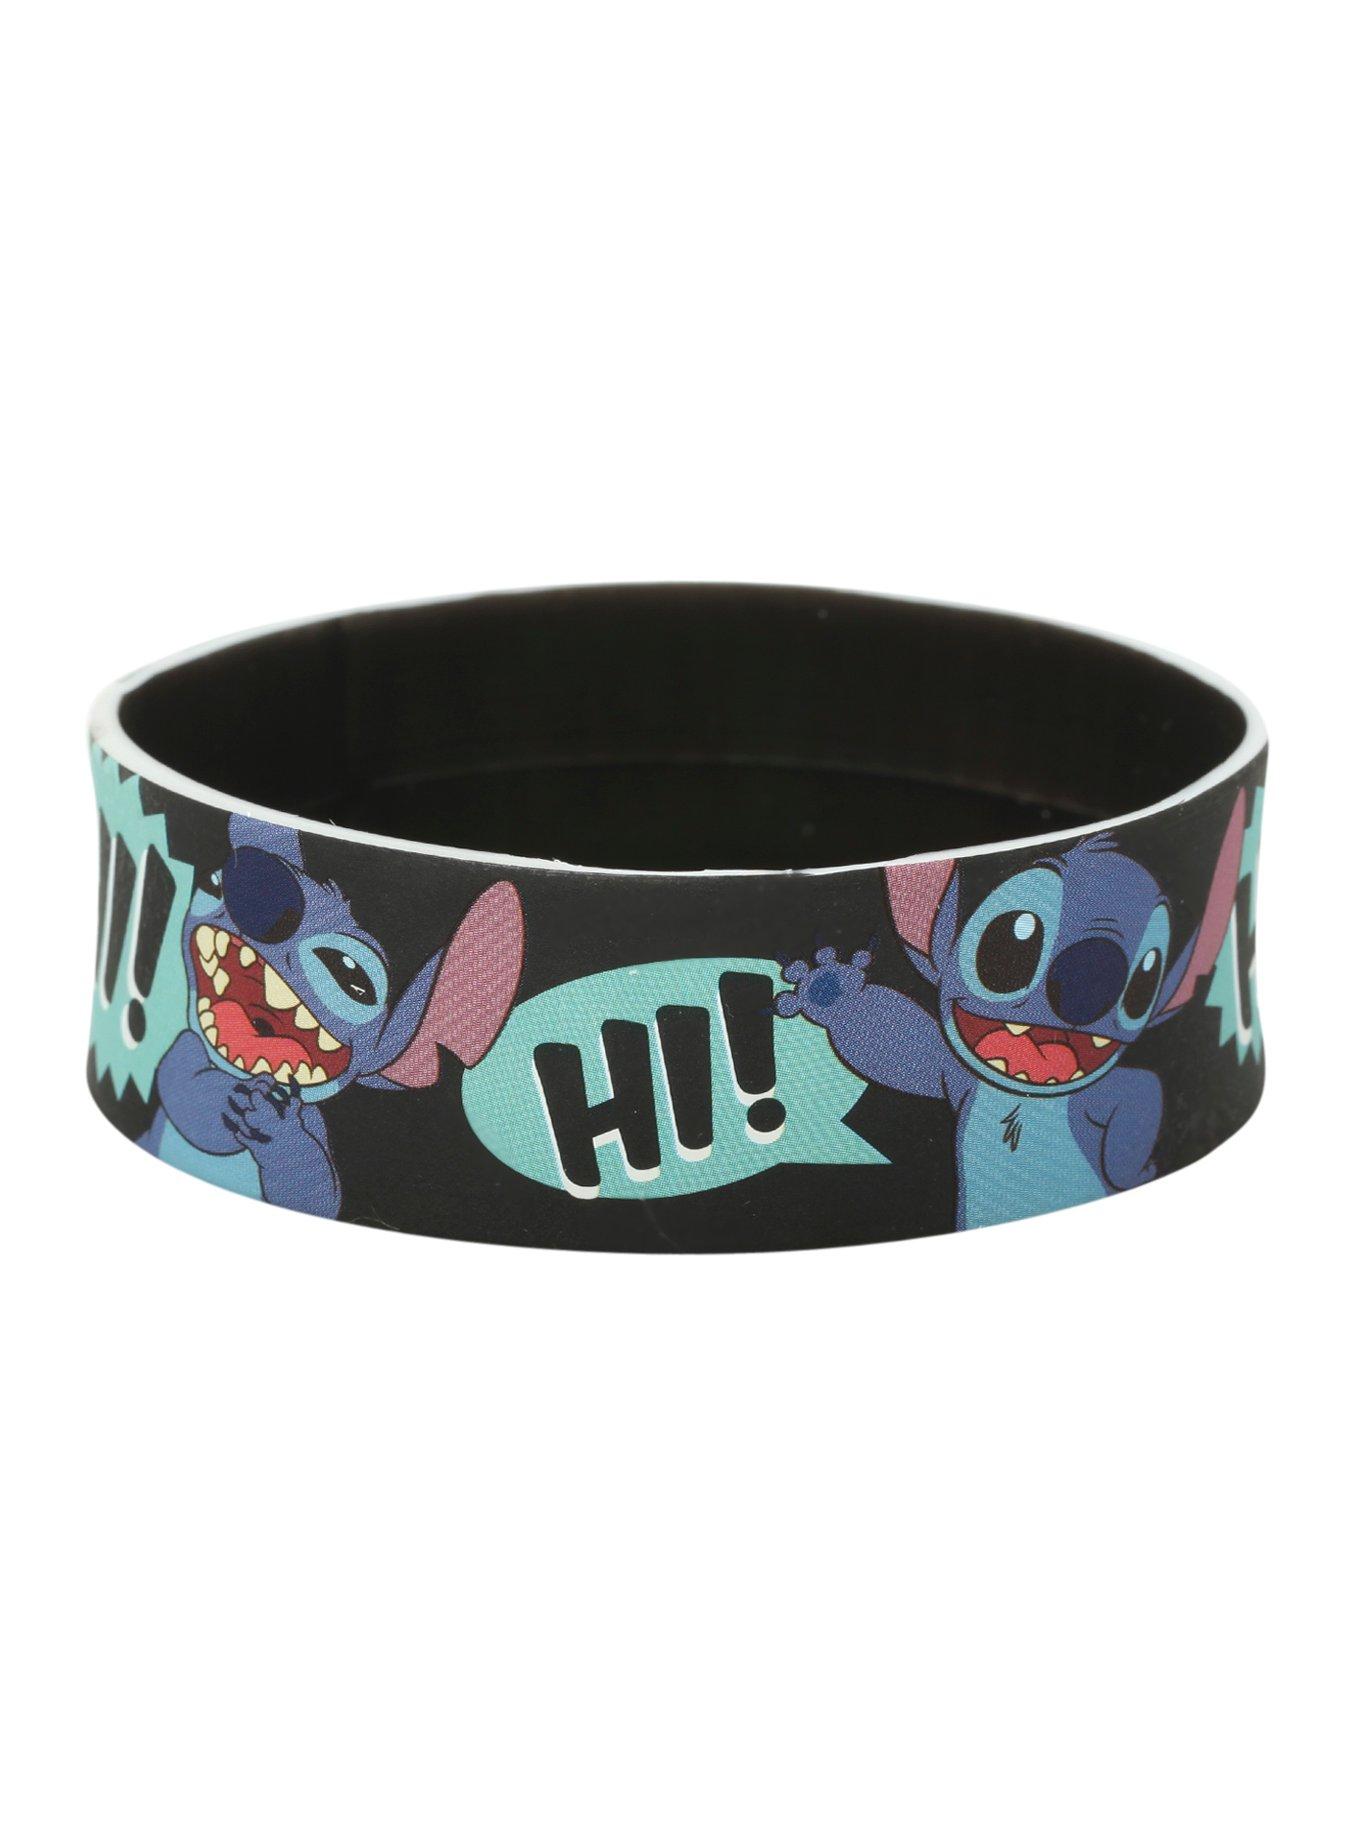 Disney Lilo & Stitch Hi Rubber Bracelet, , alternate